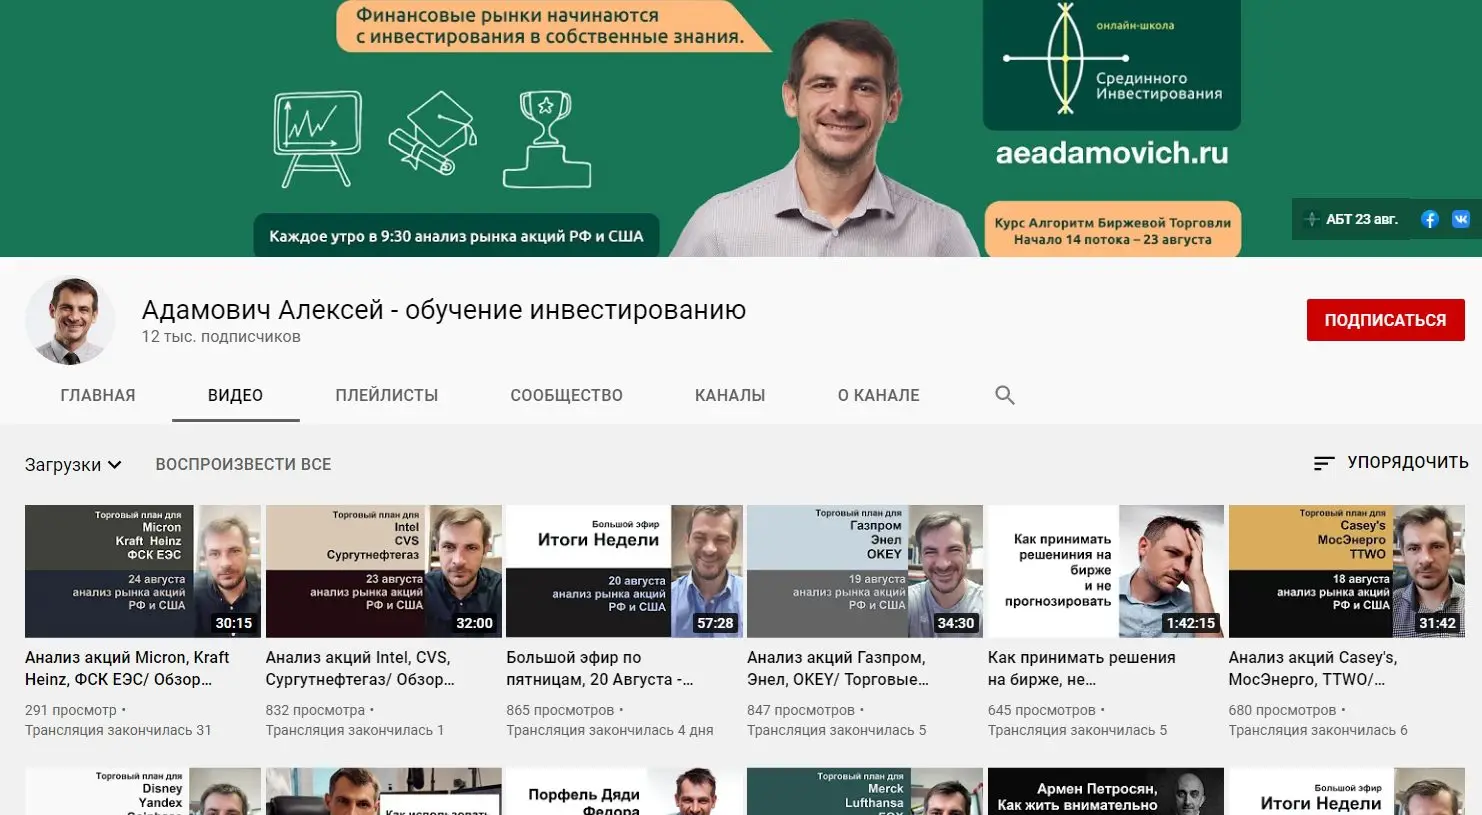 Ютуб канал Алексея Адамовича